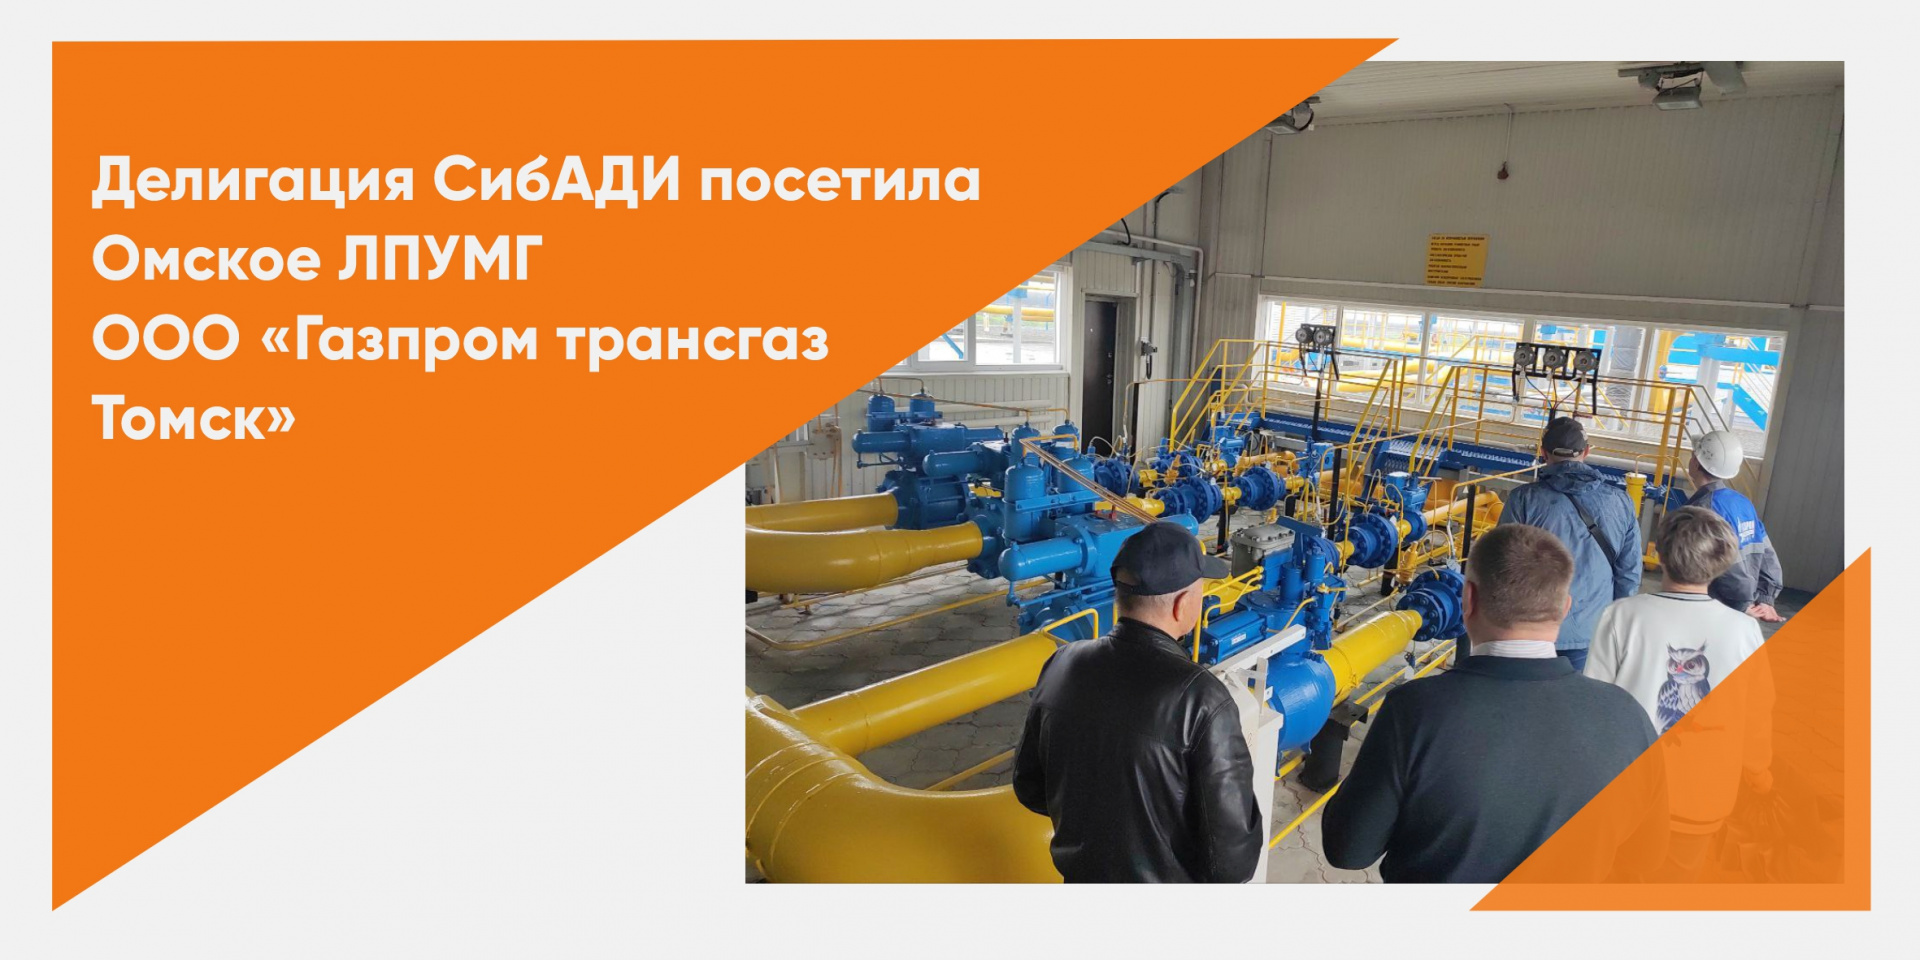 Расширяем сотрудничество: преподаватели СибАДИ посетили Омское ЛПУМГ ООО «Газпром трансгаз Томск»